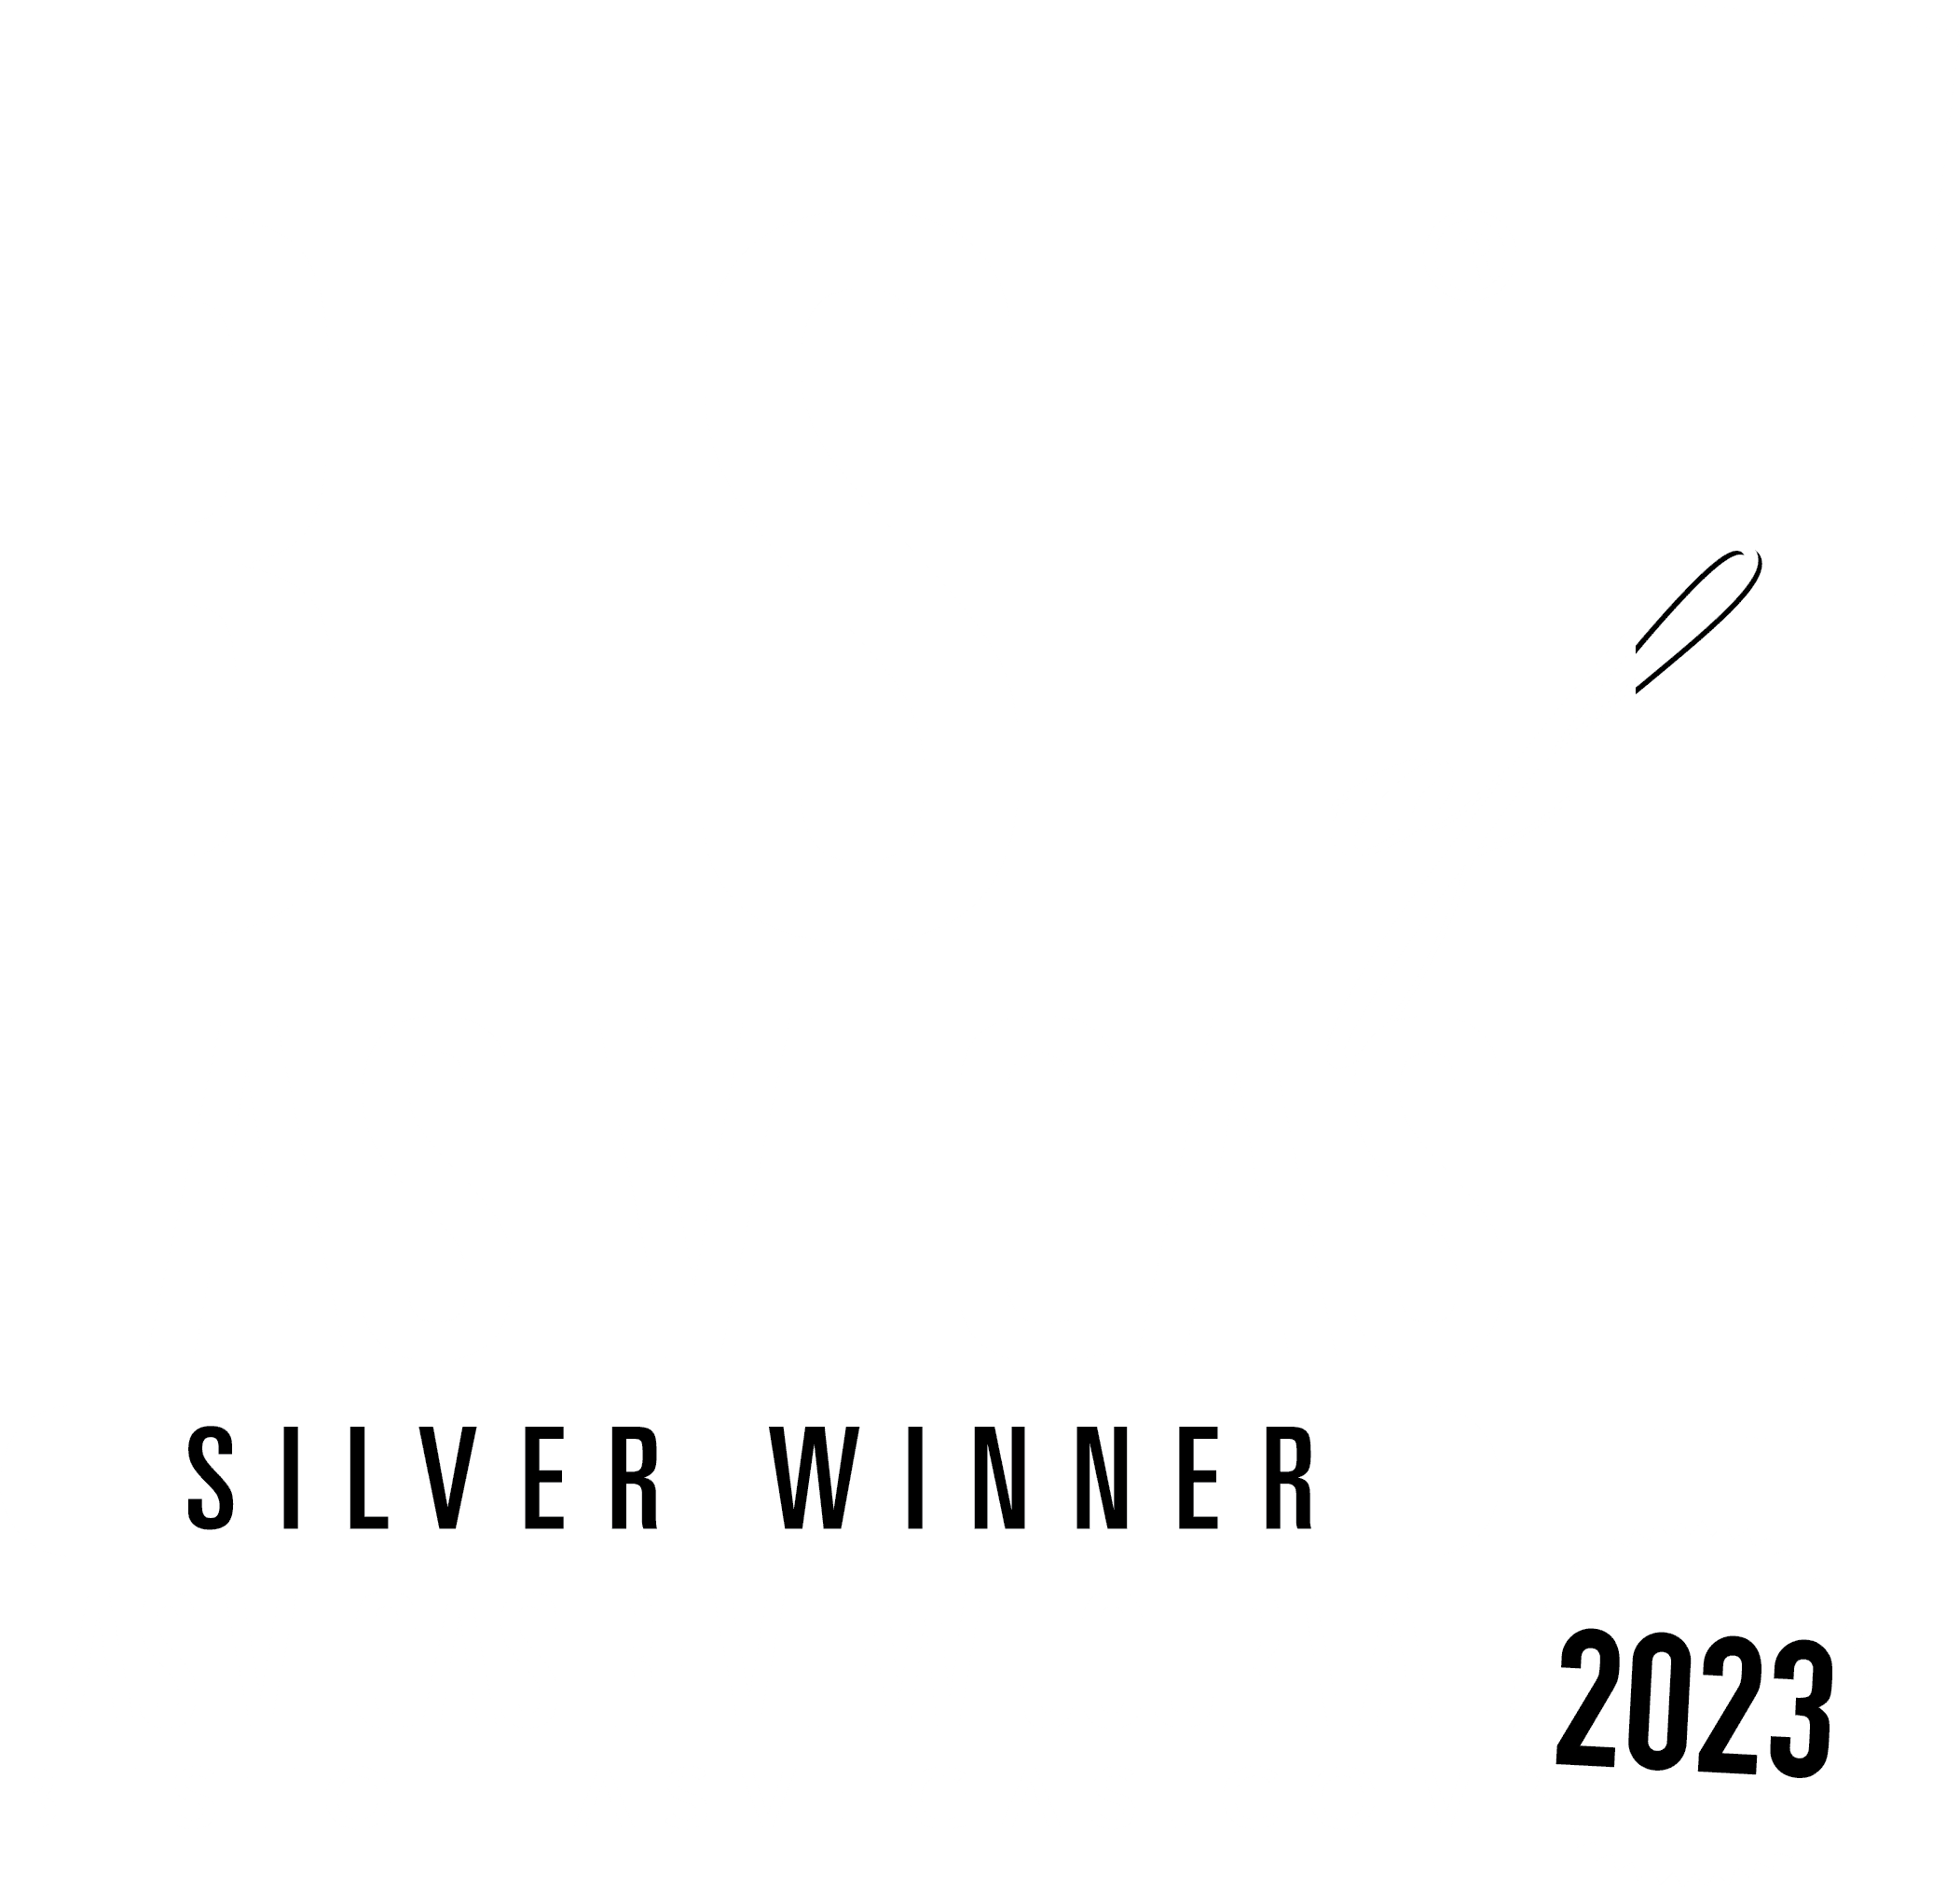 Best of Las Vegas Silver Winner 2023